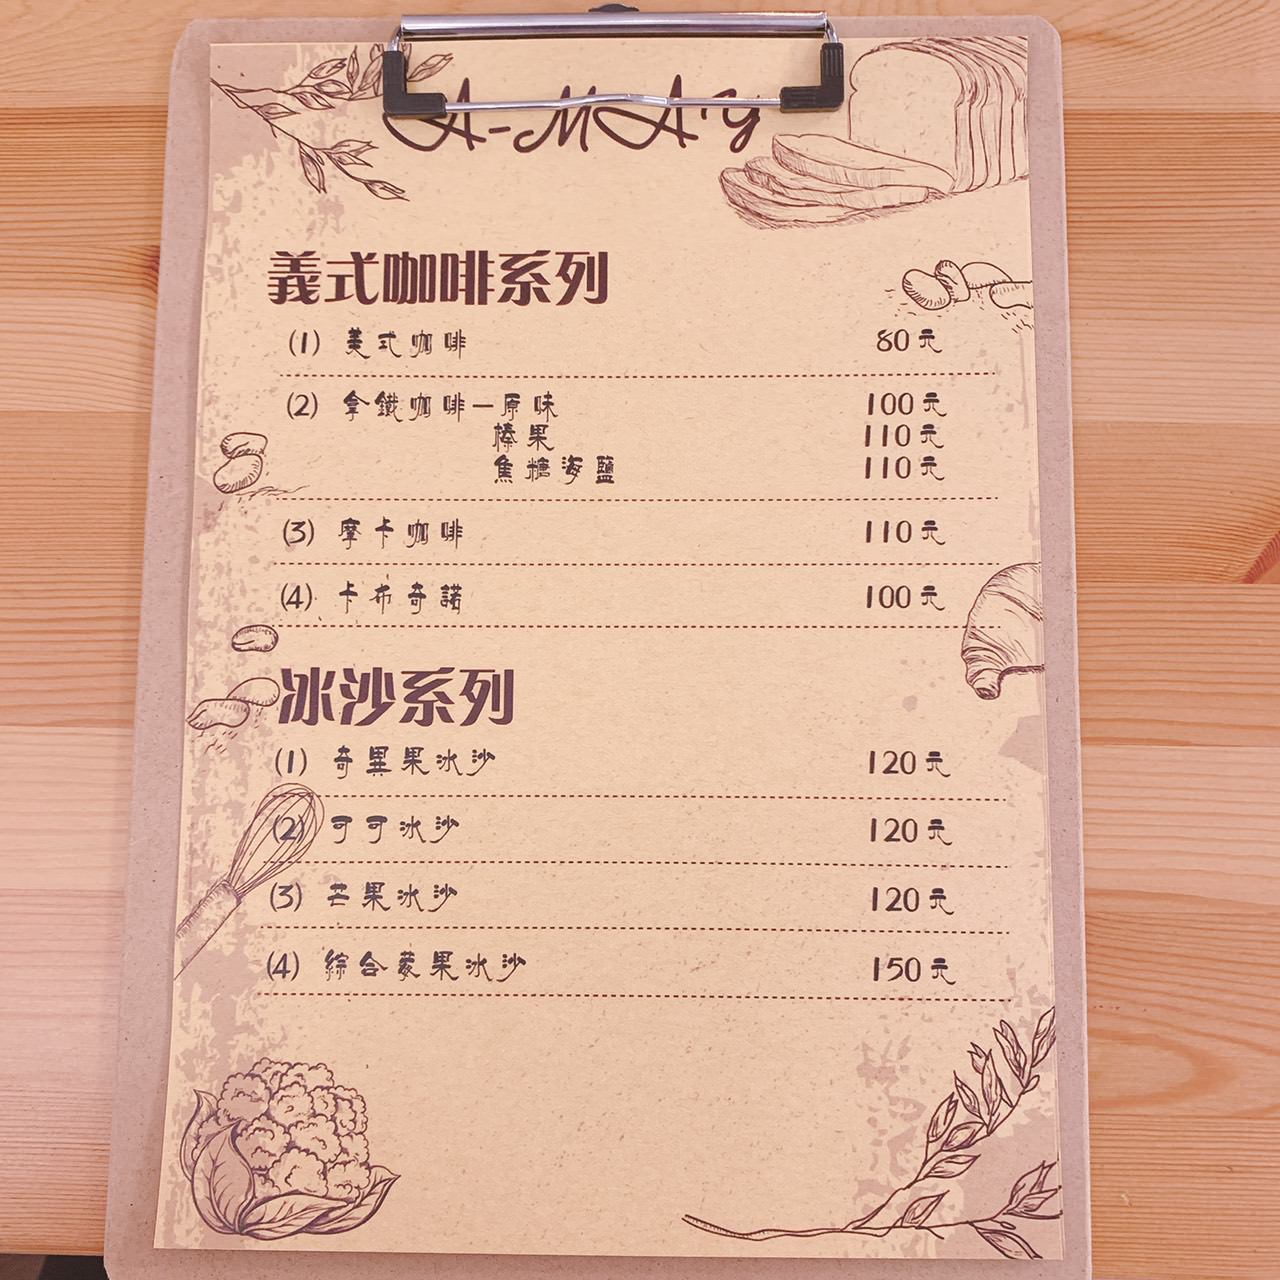 A MAY menu 04